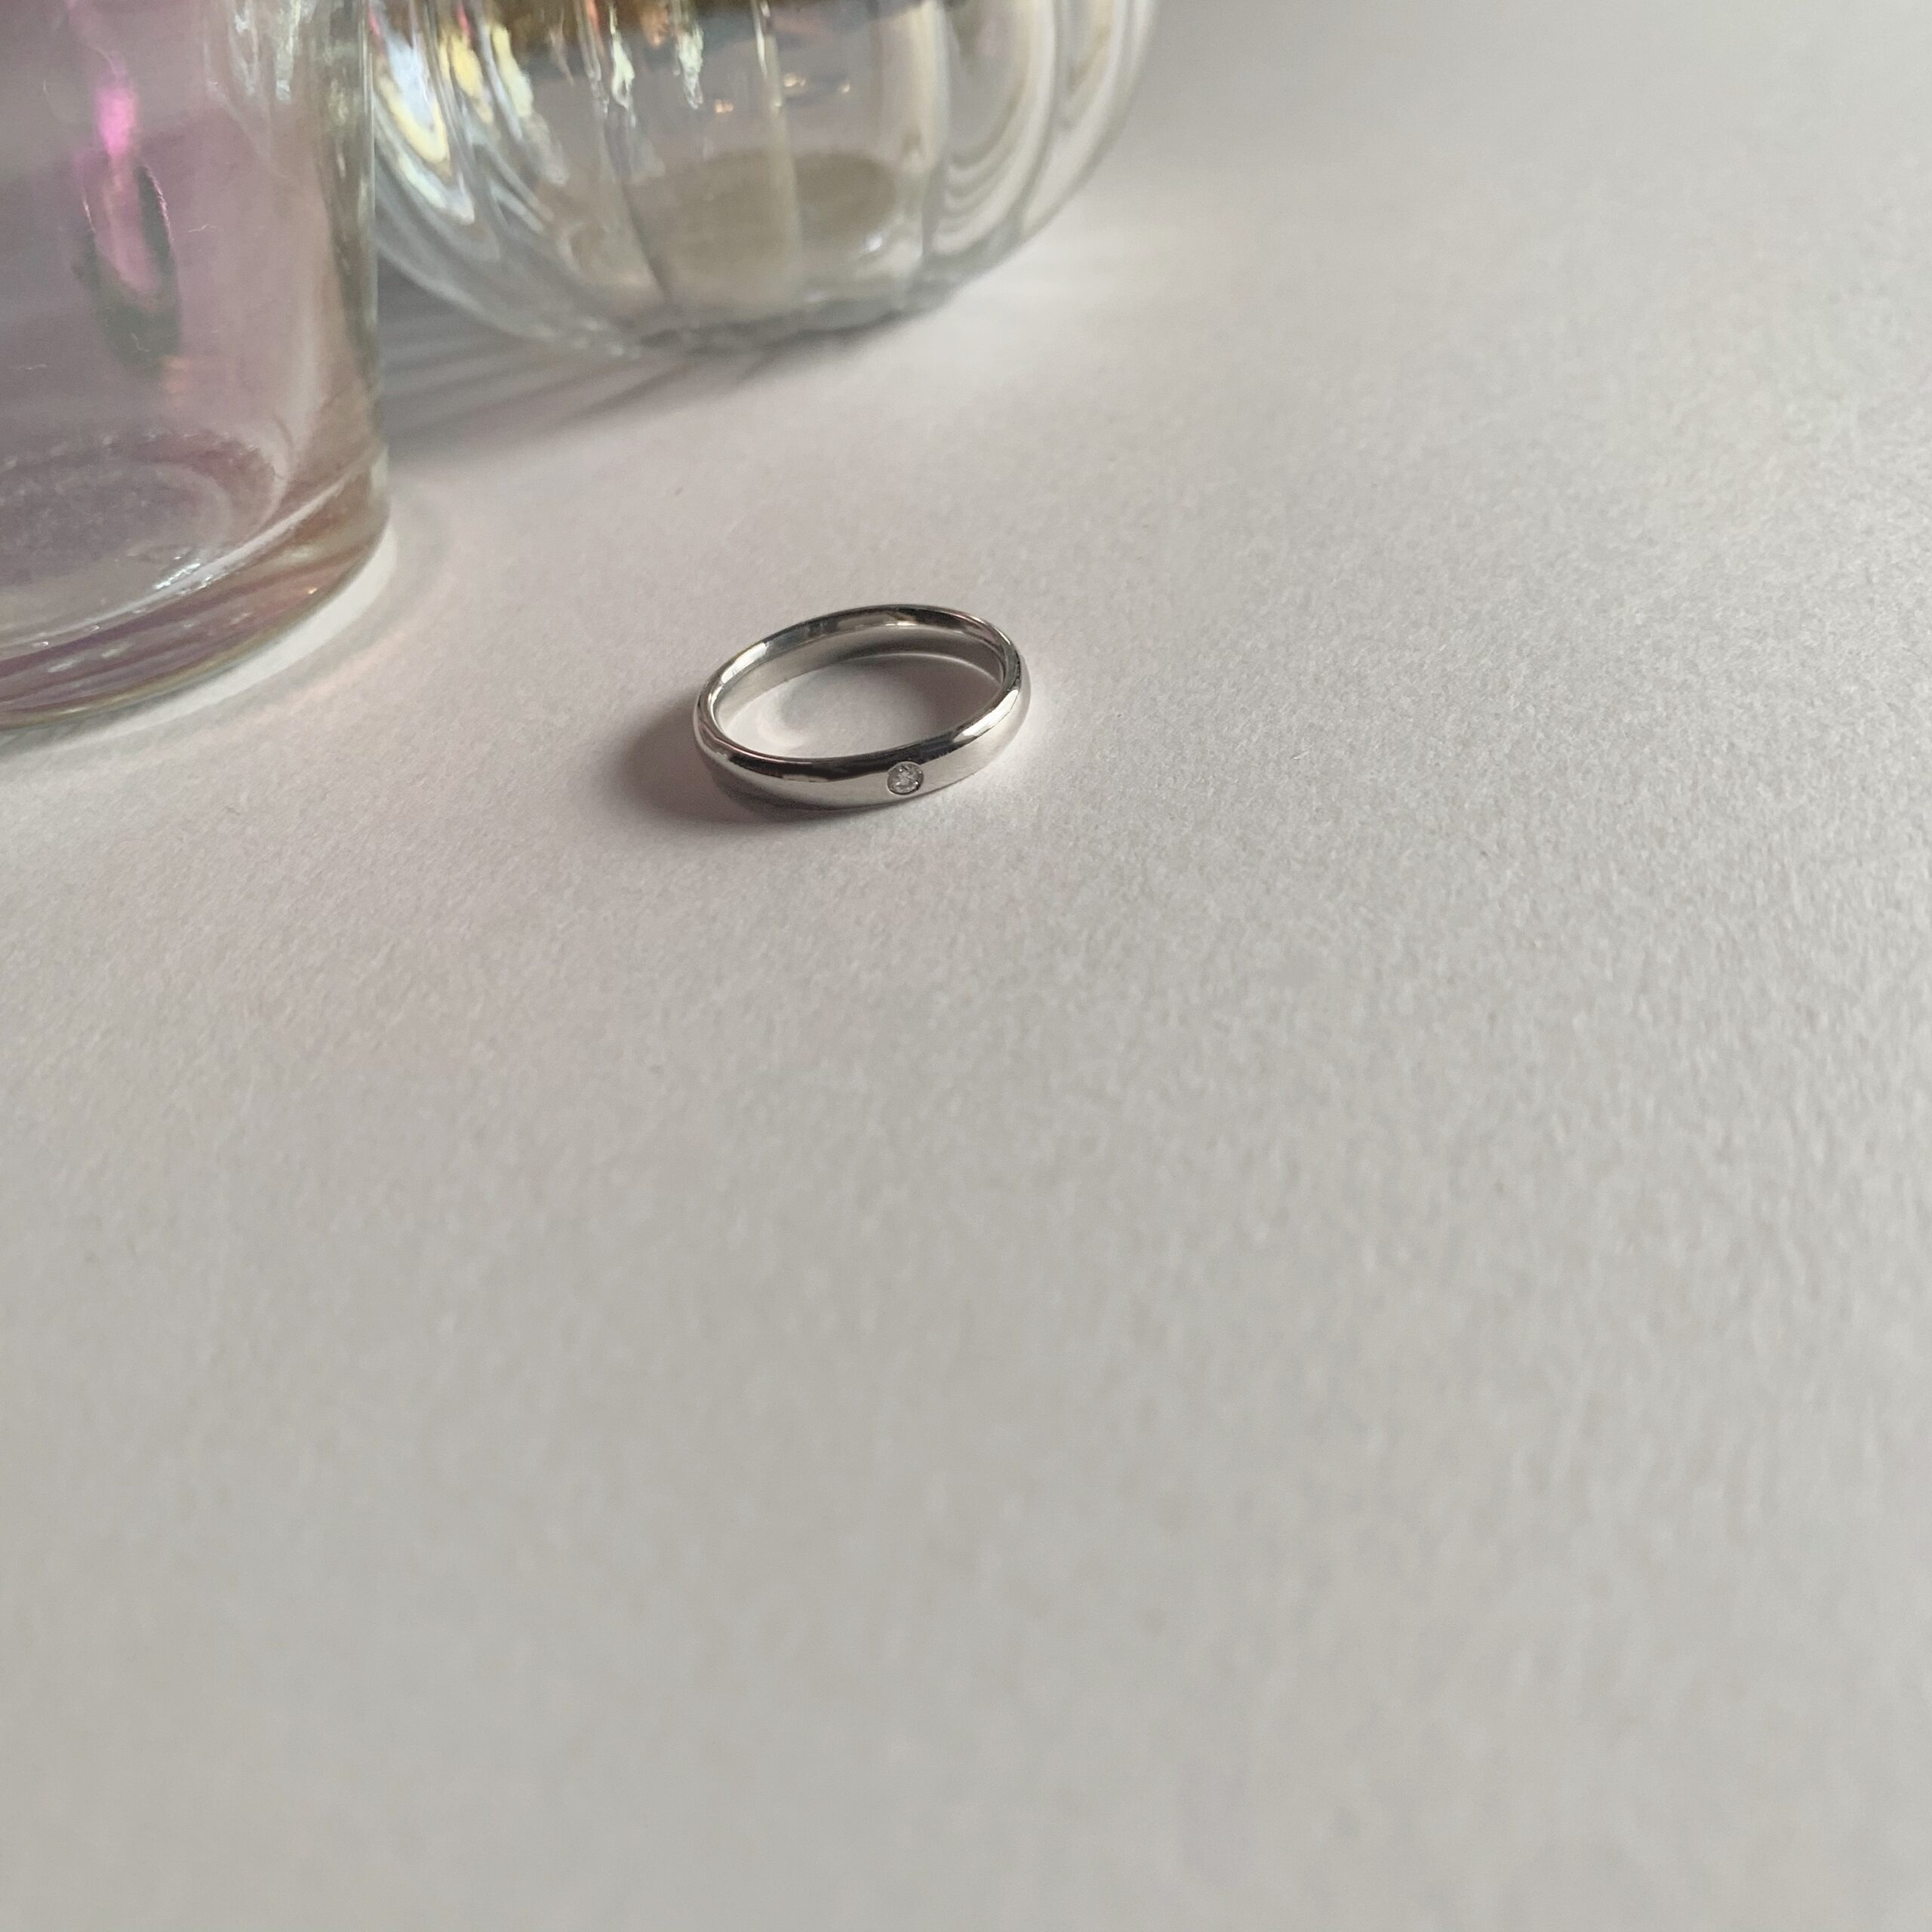 結婚指輪No1（鍛造）3.0 ダイヤモンド プラチナ(幅3.0mm / Pt950